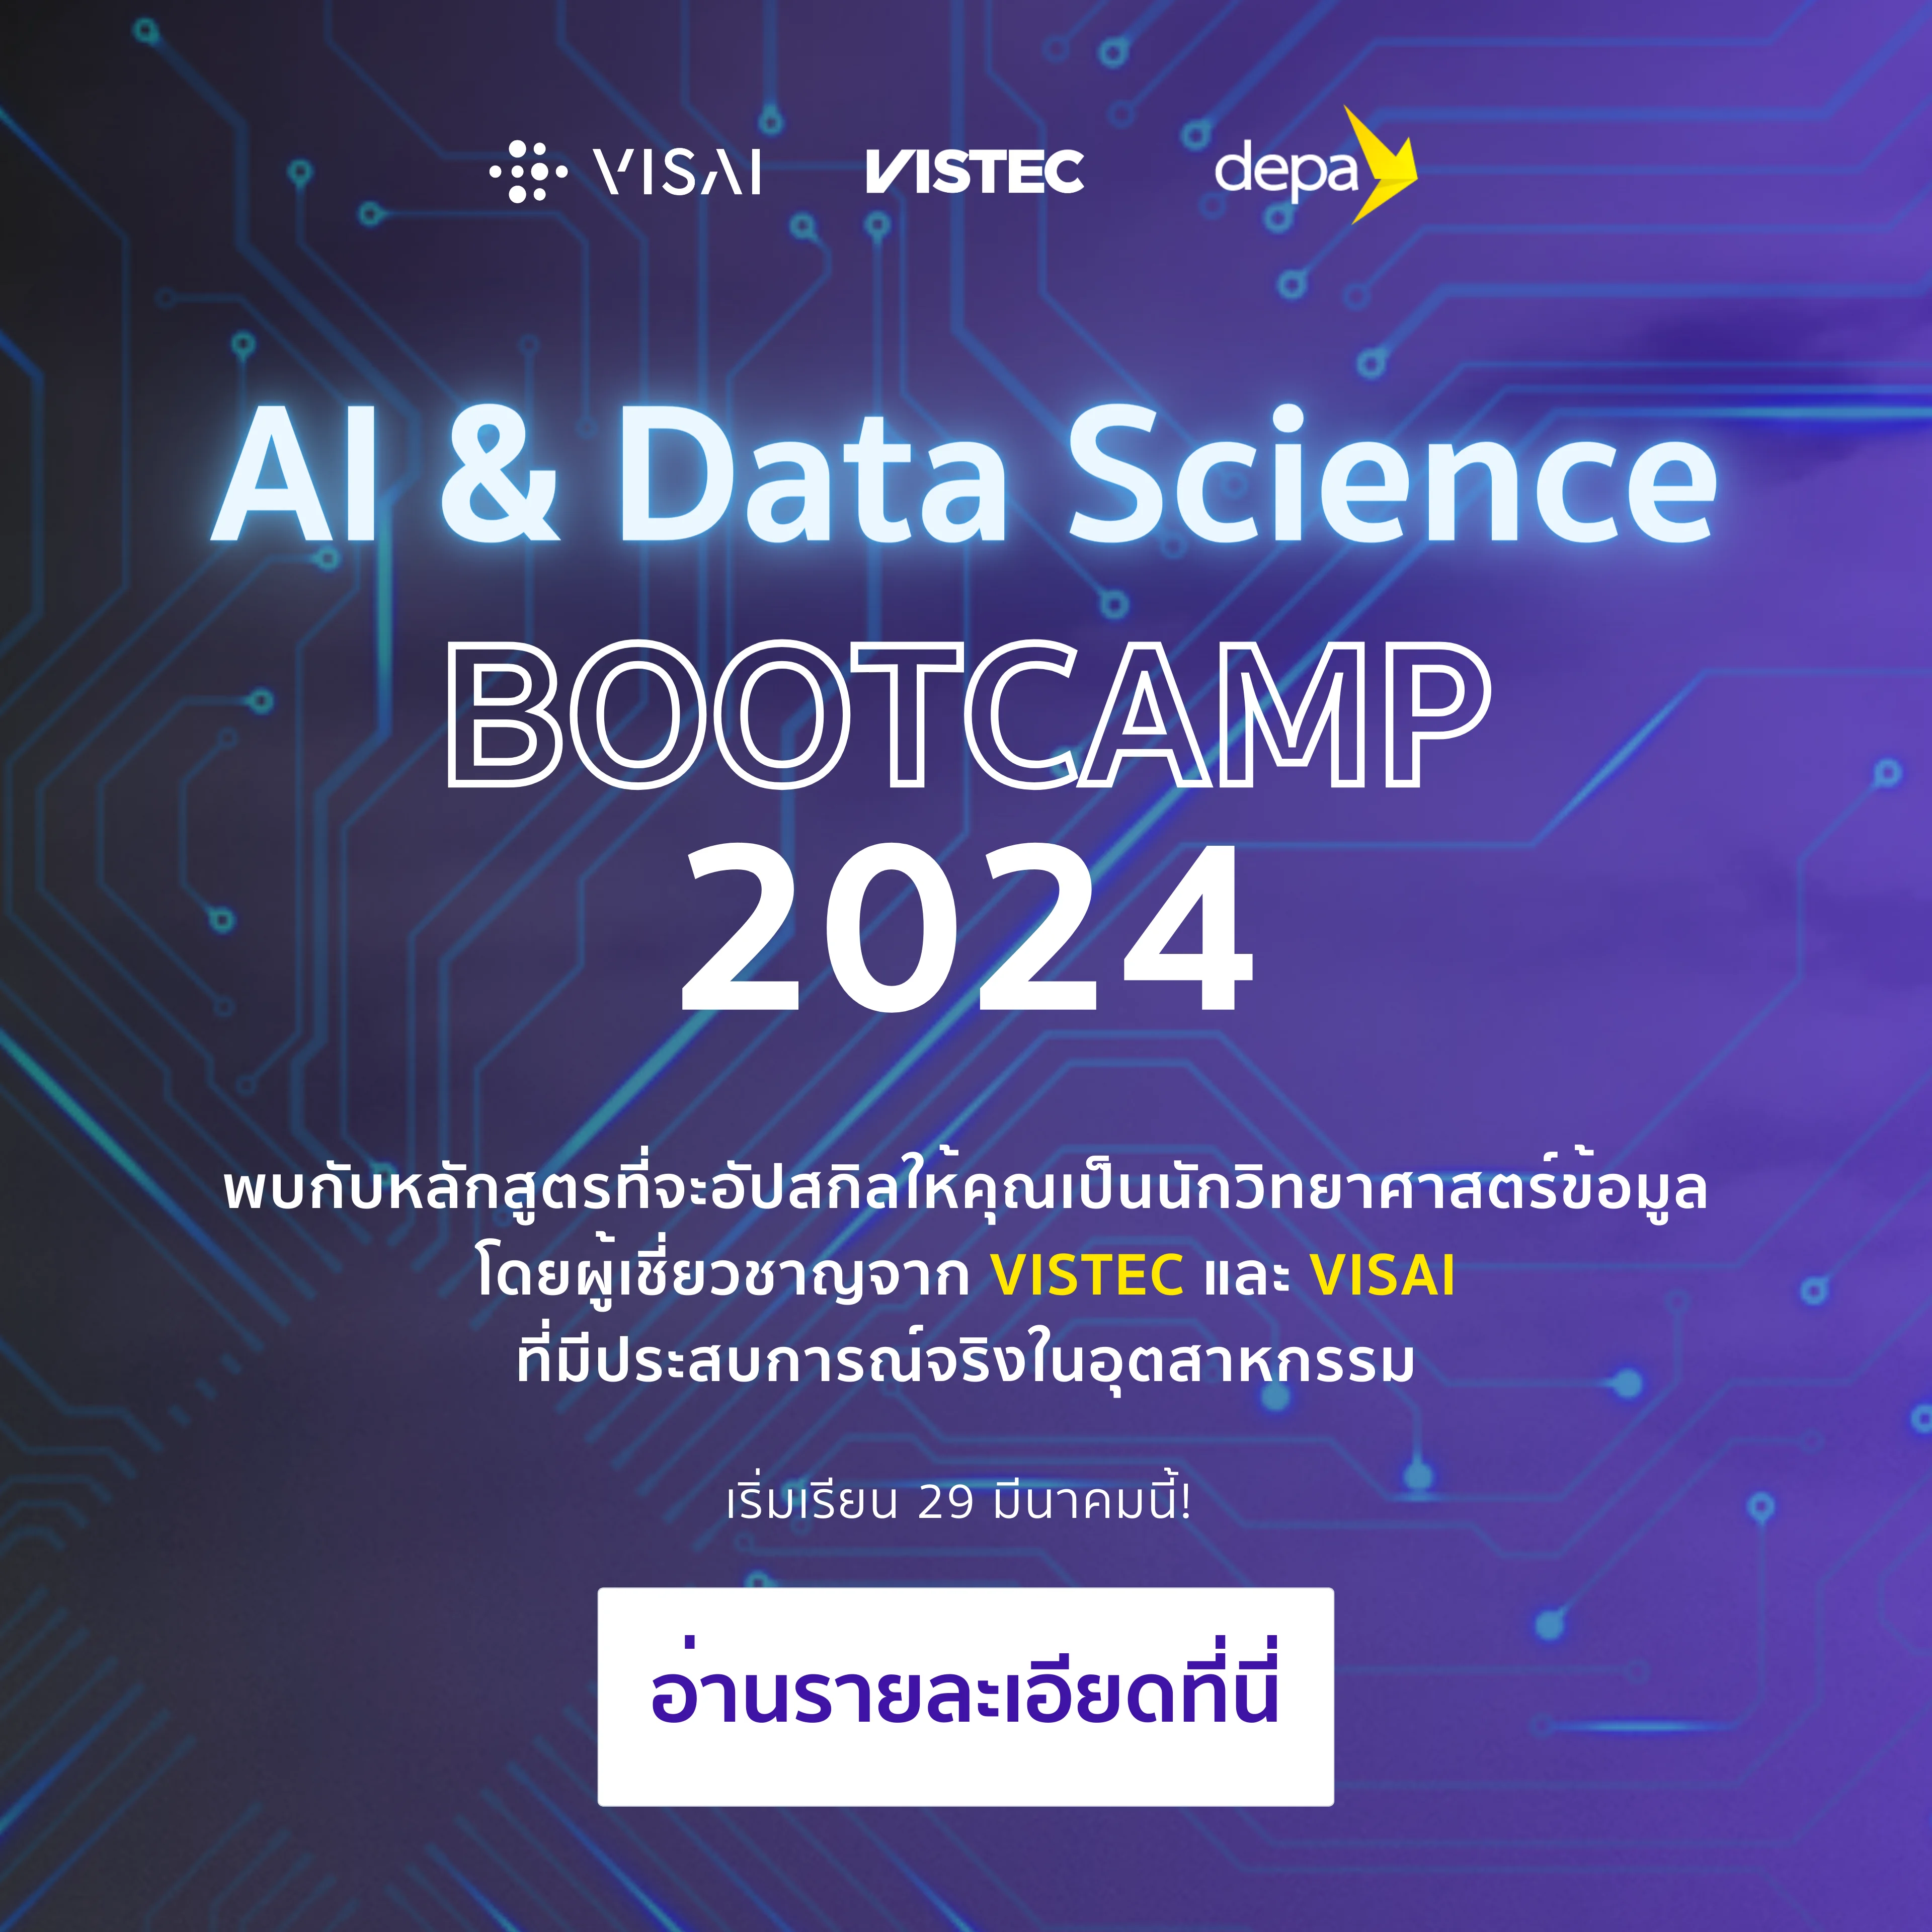 VISAI Bootcamp 2024